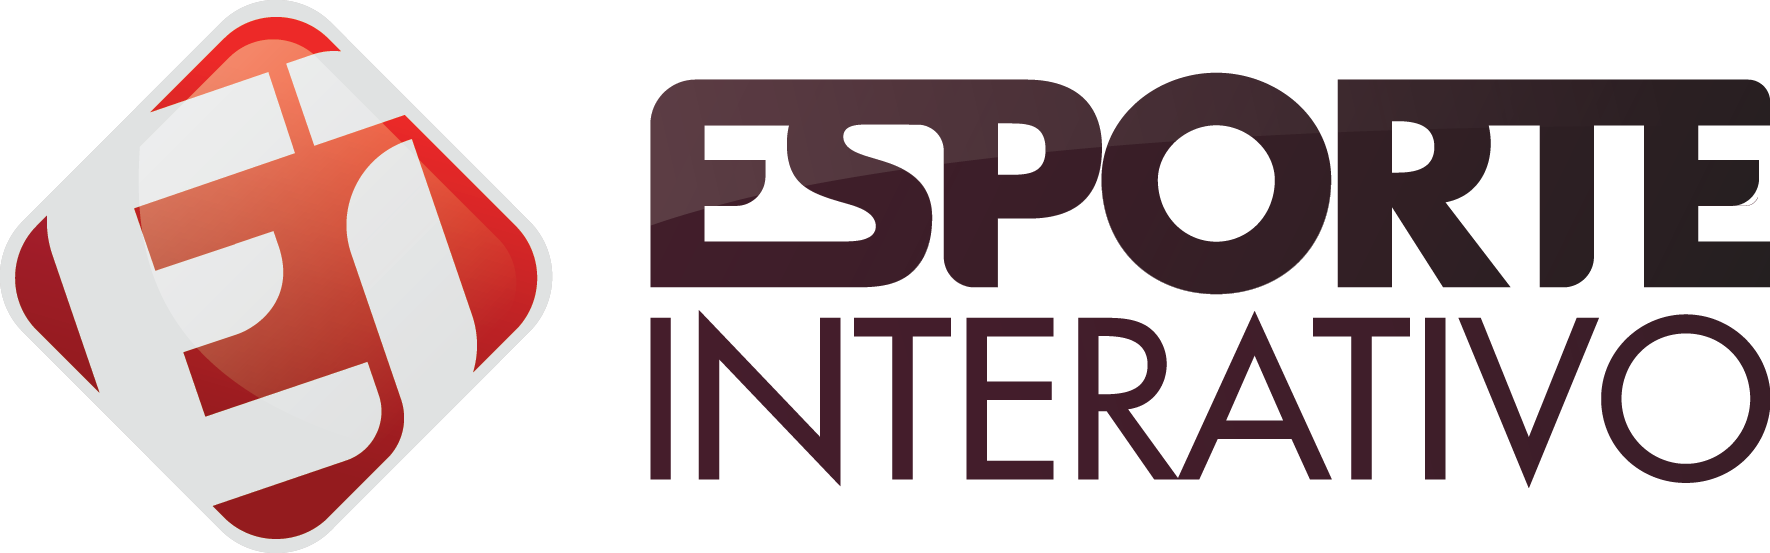 logo do canal esporte interativo, que vai transmitir a copa ei games 2017